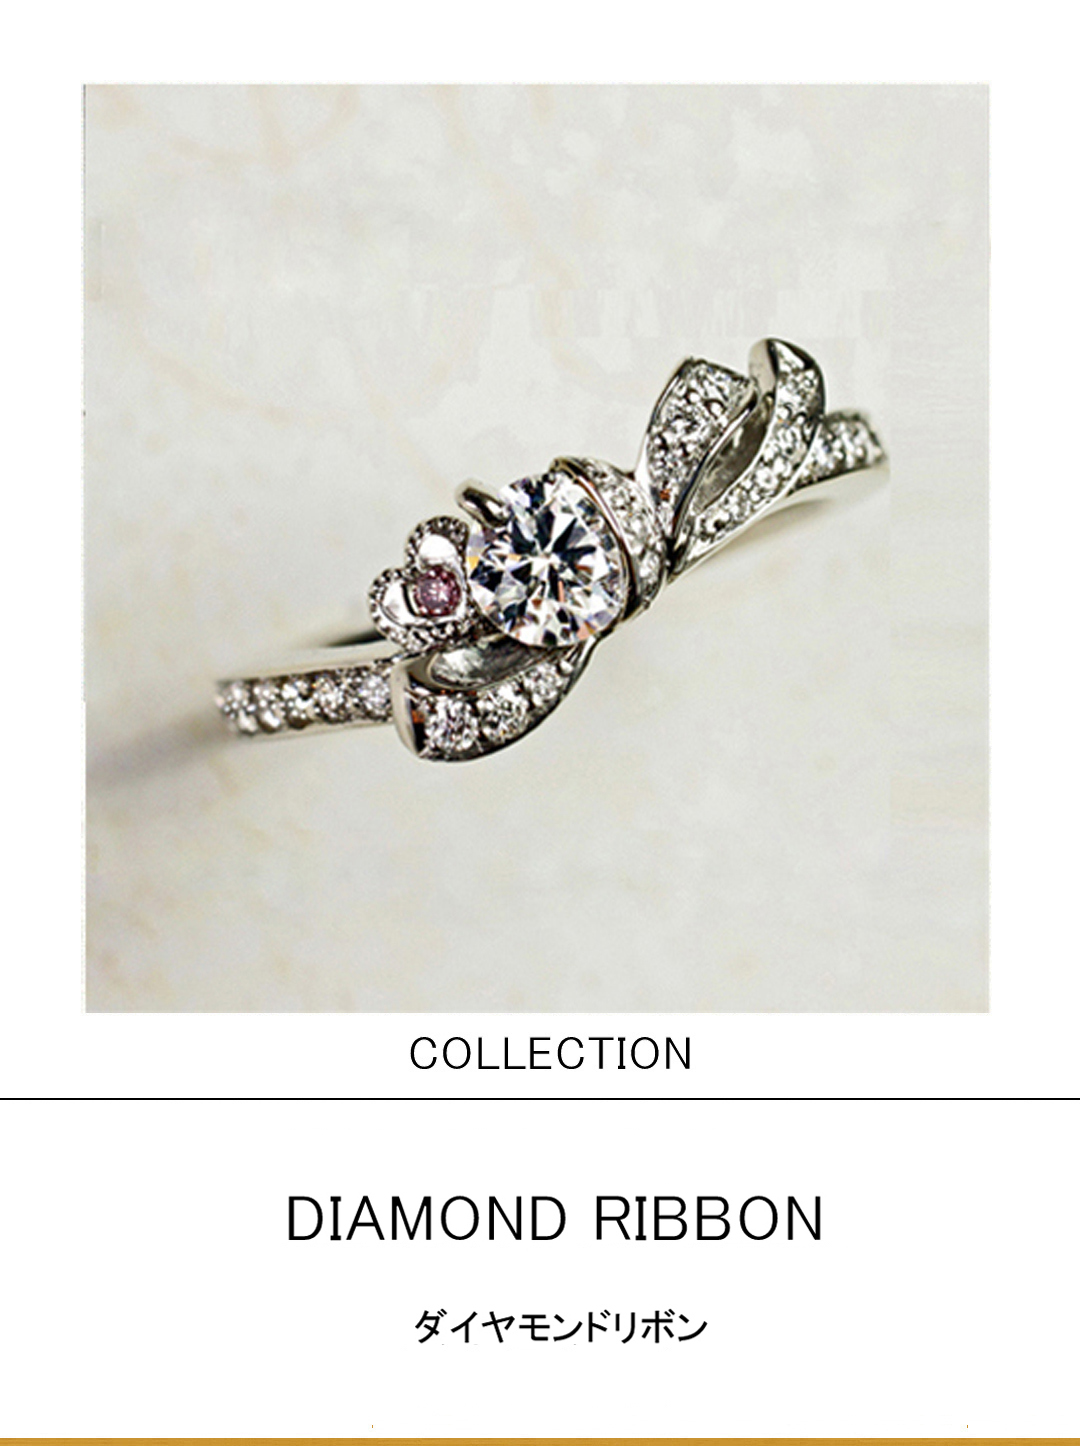 ダイヤモンドをリボンで結んだデザインの婚約指輪コレクションのサムネイル